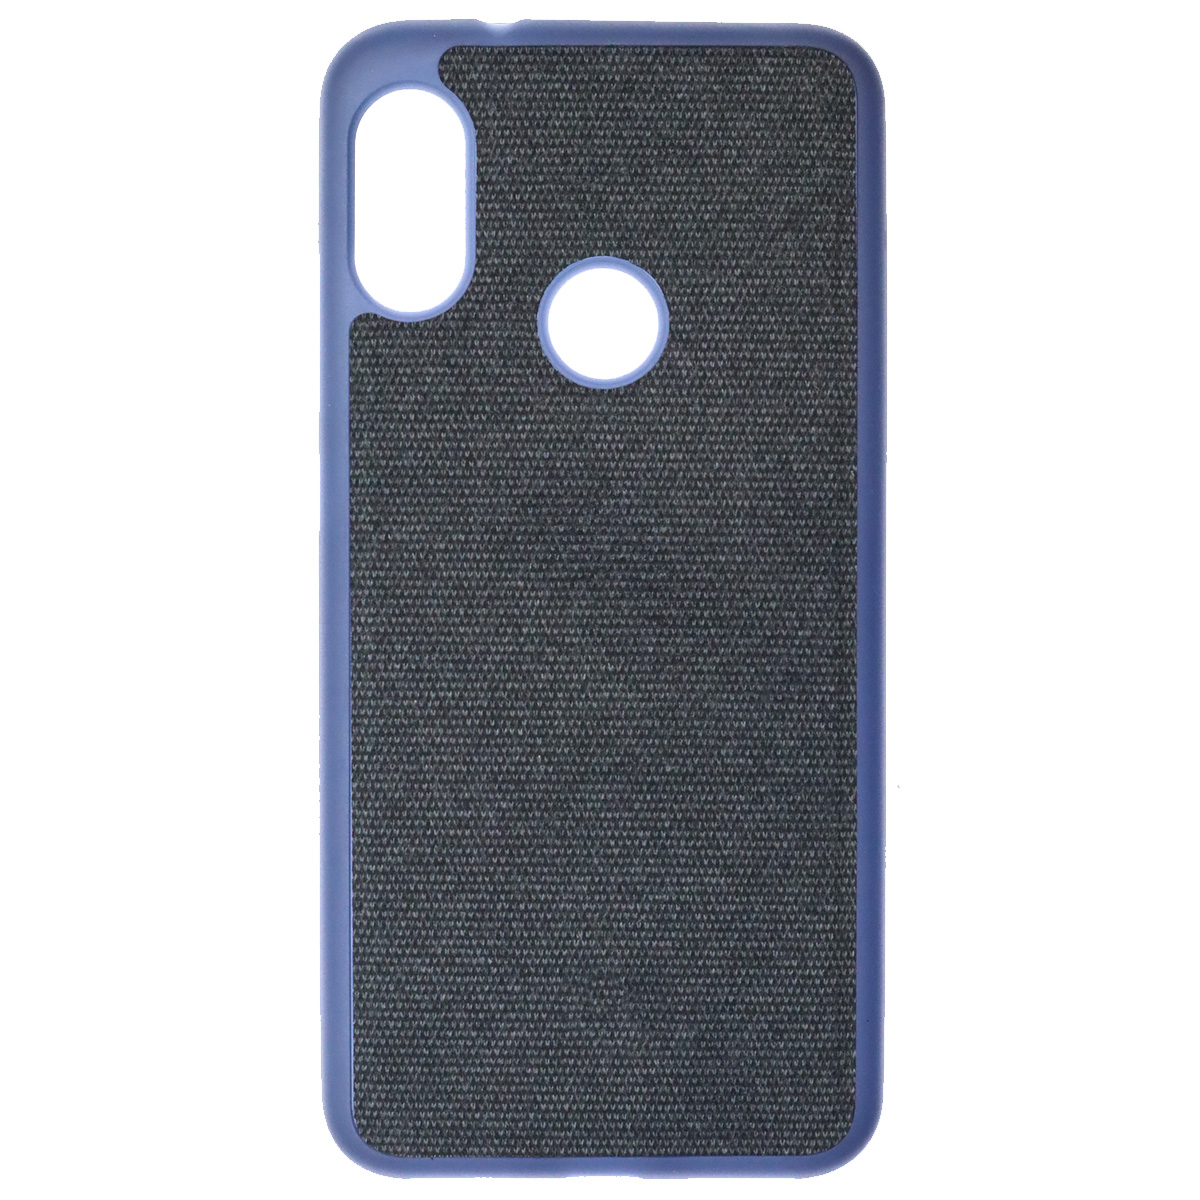 Чехол накладка для XIAOMI Redmi 6 Pro, Mi A2 Lite, силикон, ткань, экокожа, цвет темно синий